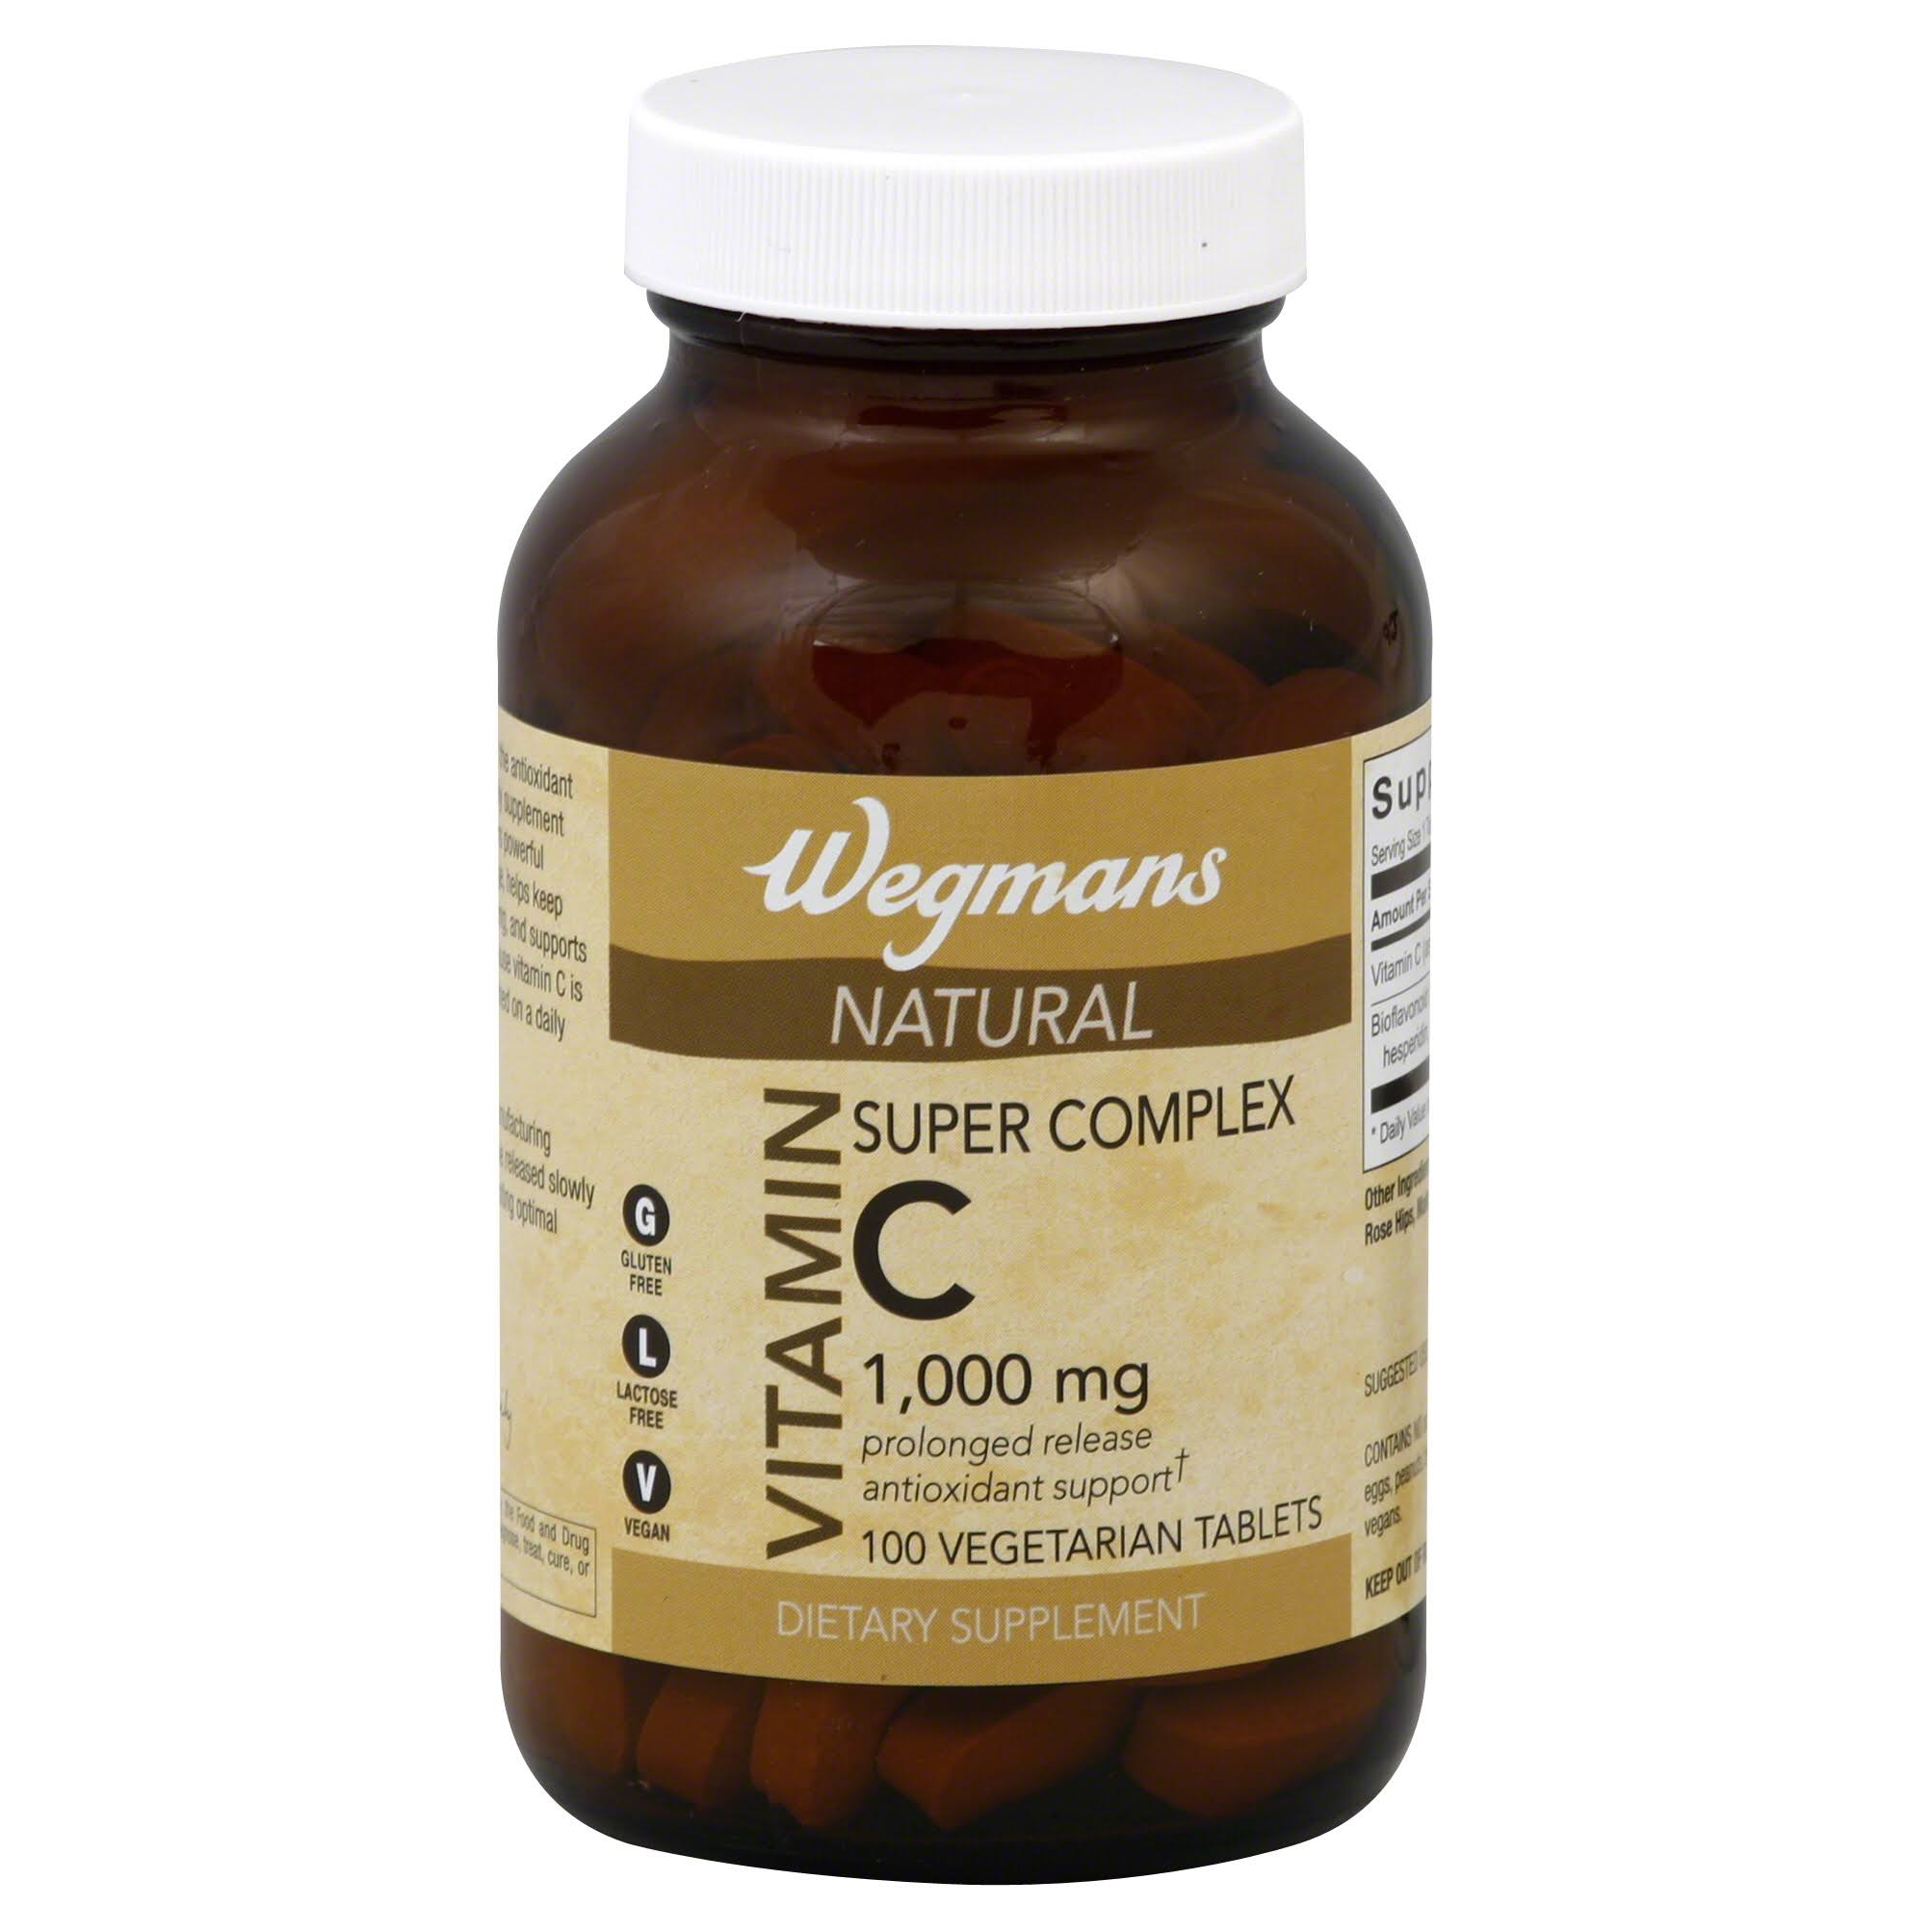 Wegmans Vitamin C, Natural, Super Complex, 1000 mg, Tablets - 100 tablets